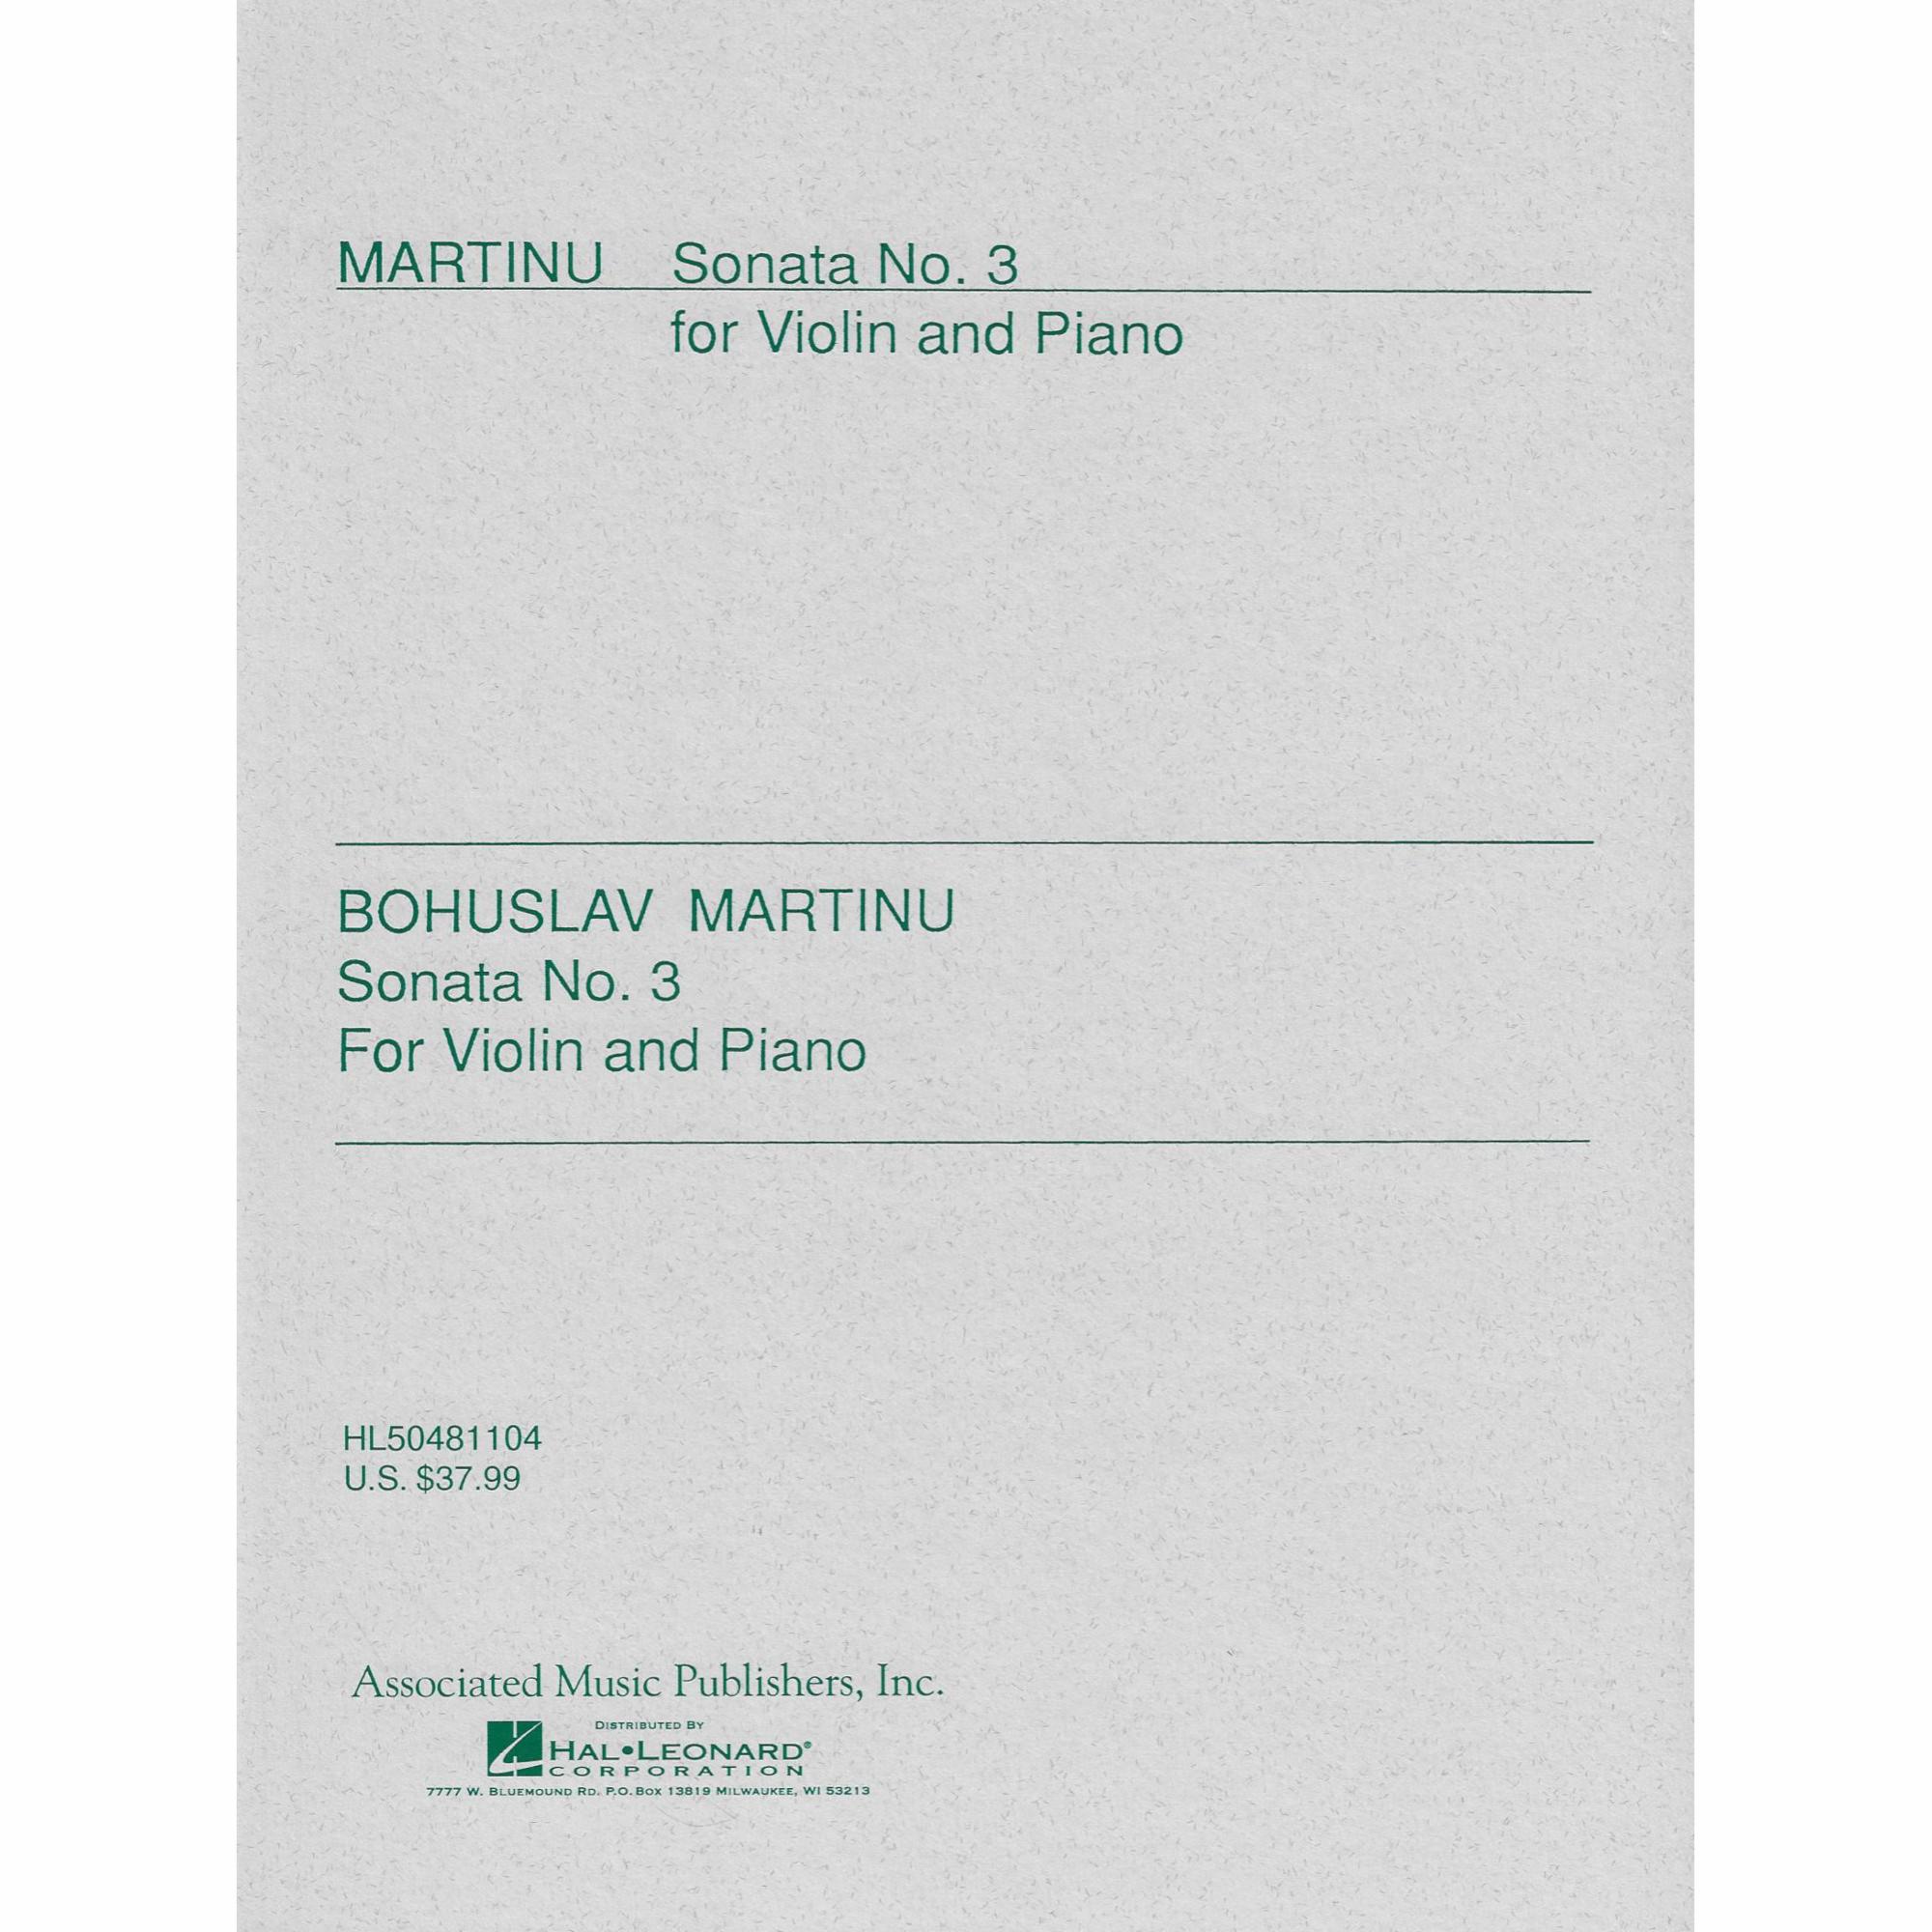 Martinu -- Sonata No. 3 for Violin and Piano